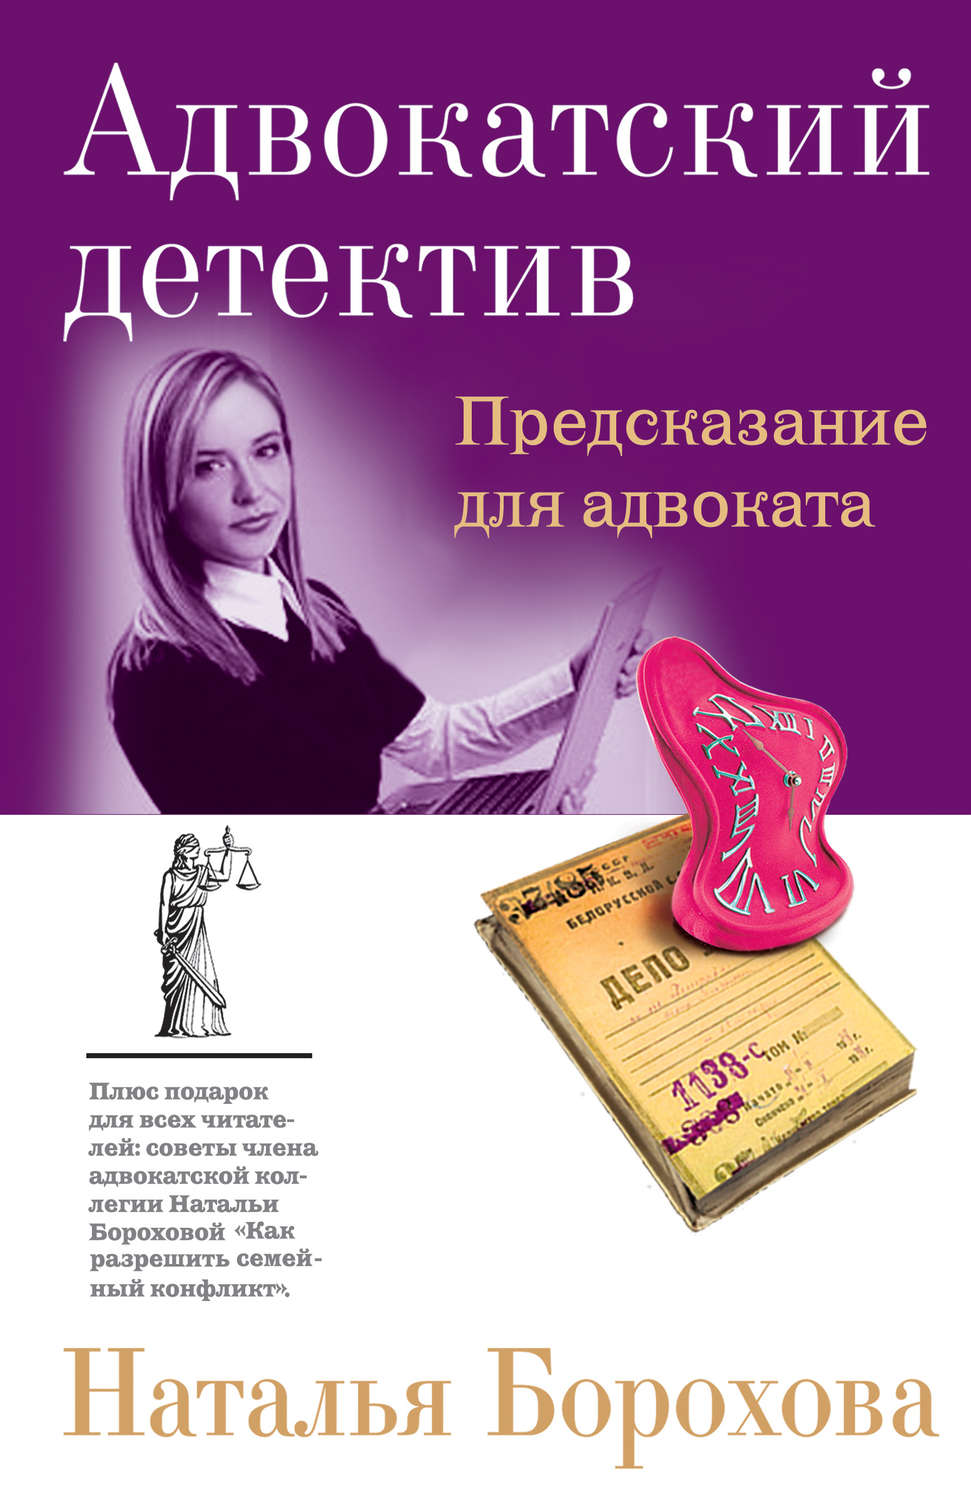 Наталья борохова книги скачать бесплатно